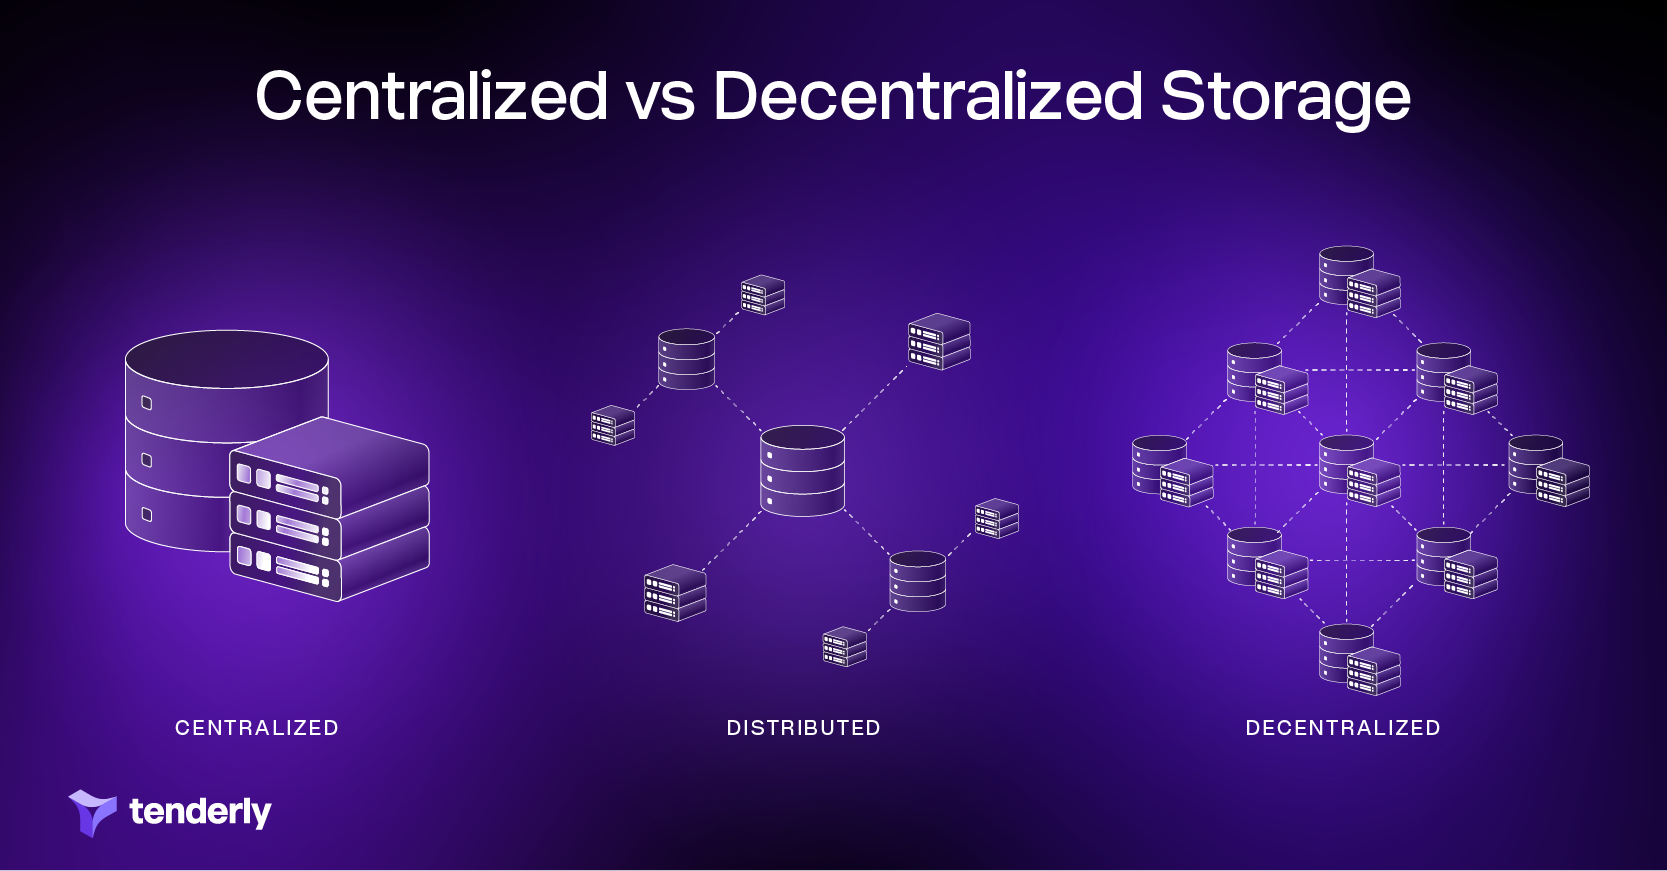 centalized vs distributed vs decentralized storage